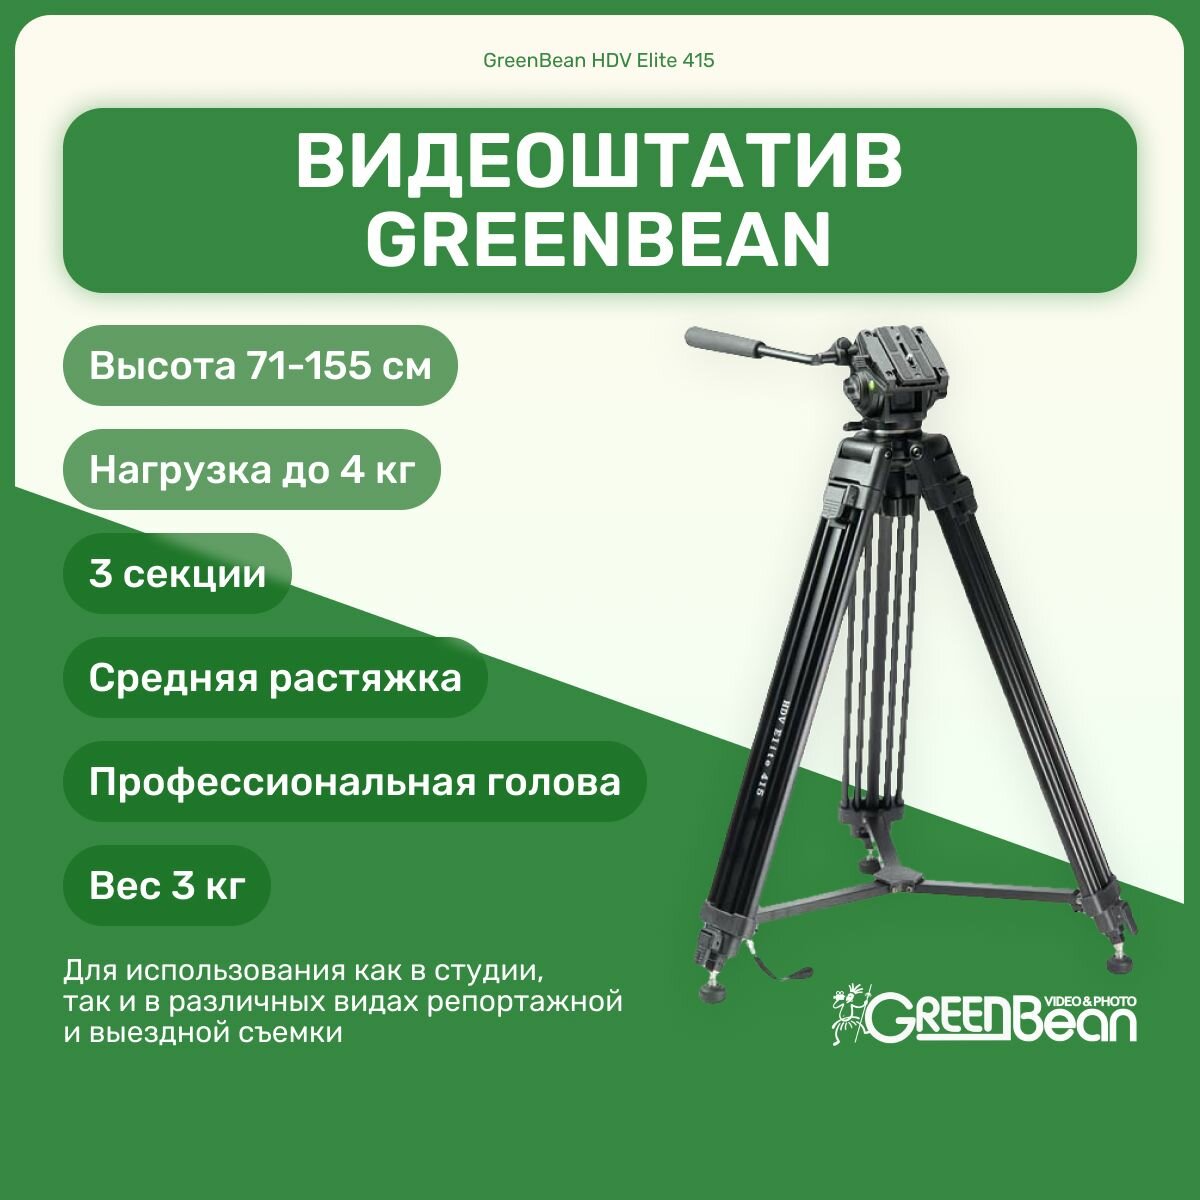 Видеоштатив GreenBean HDV Elite 415, для камеры, фотоаппарата, для видео съемки, трипод